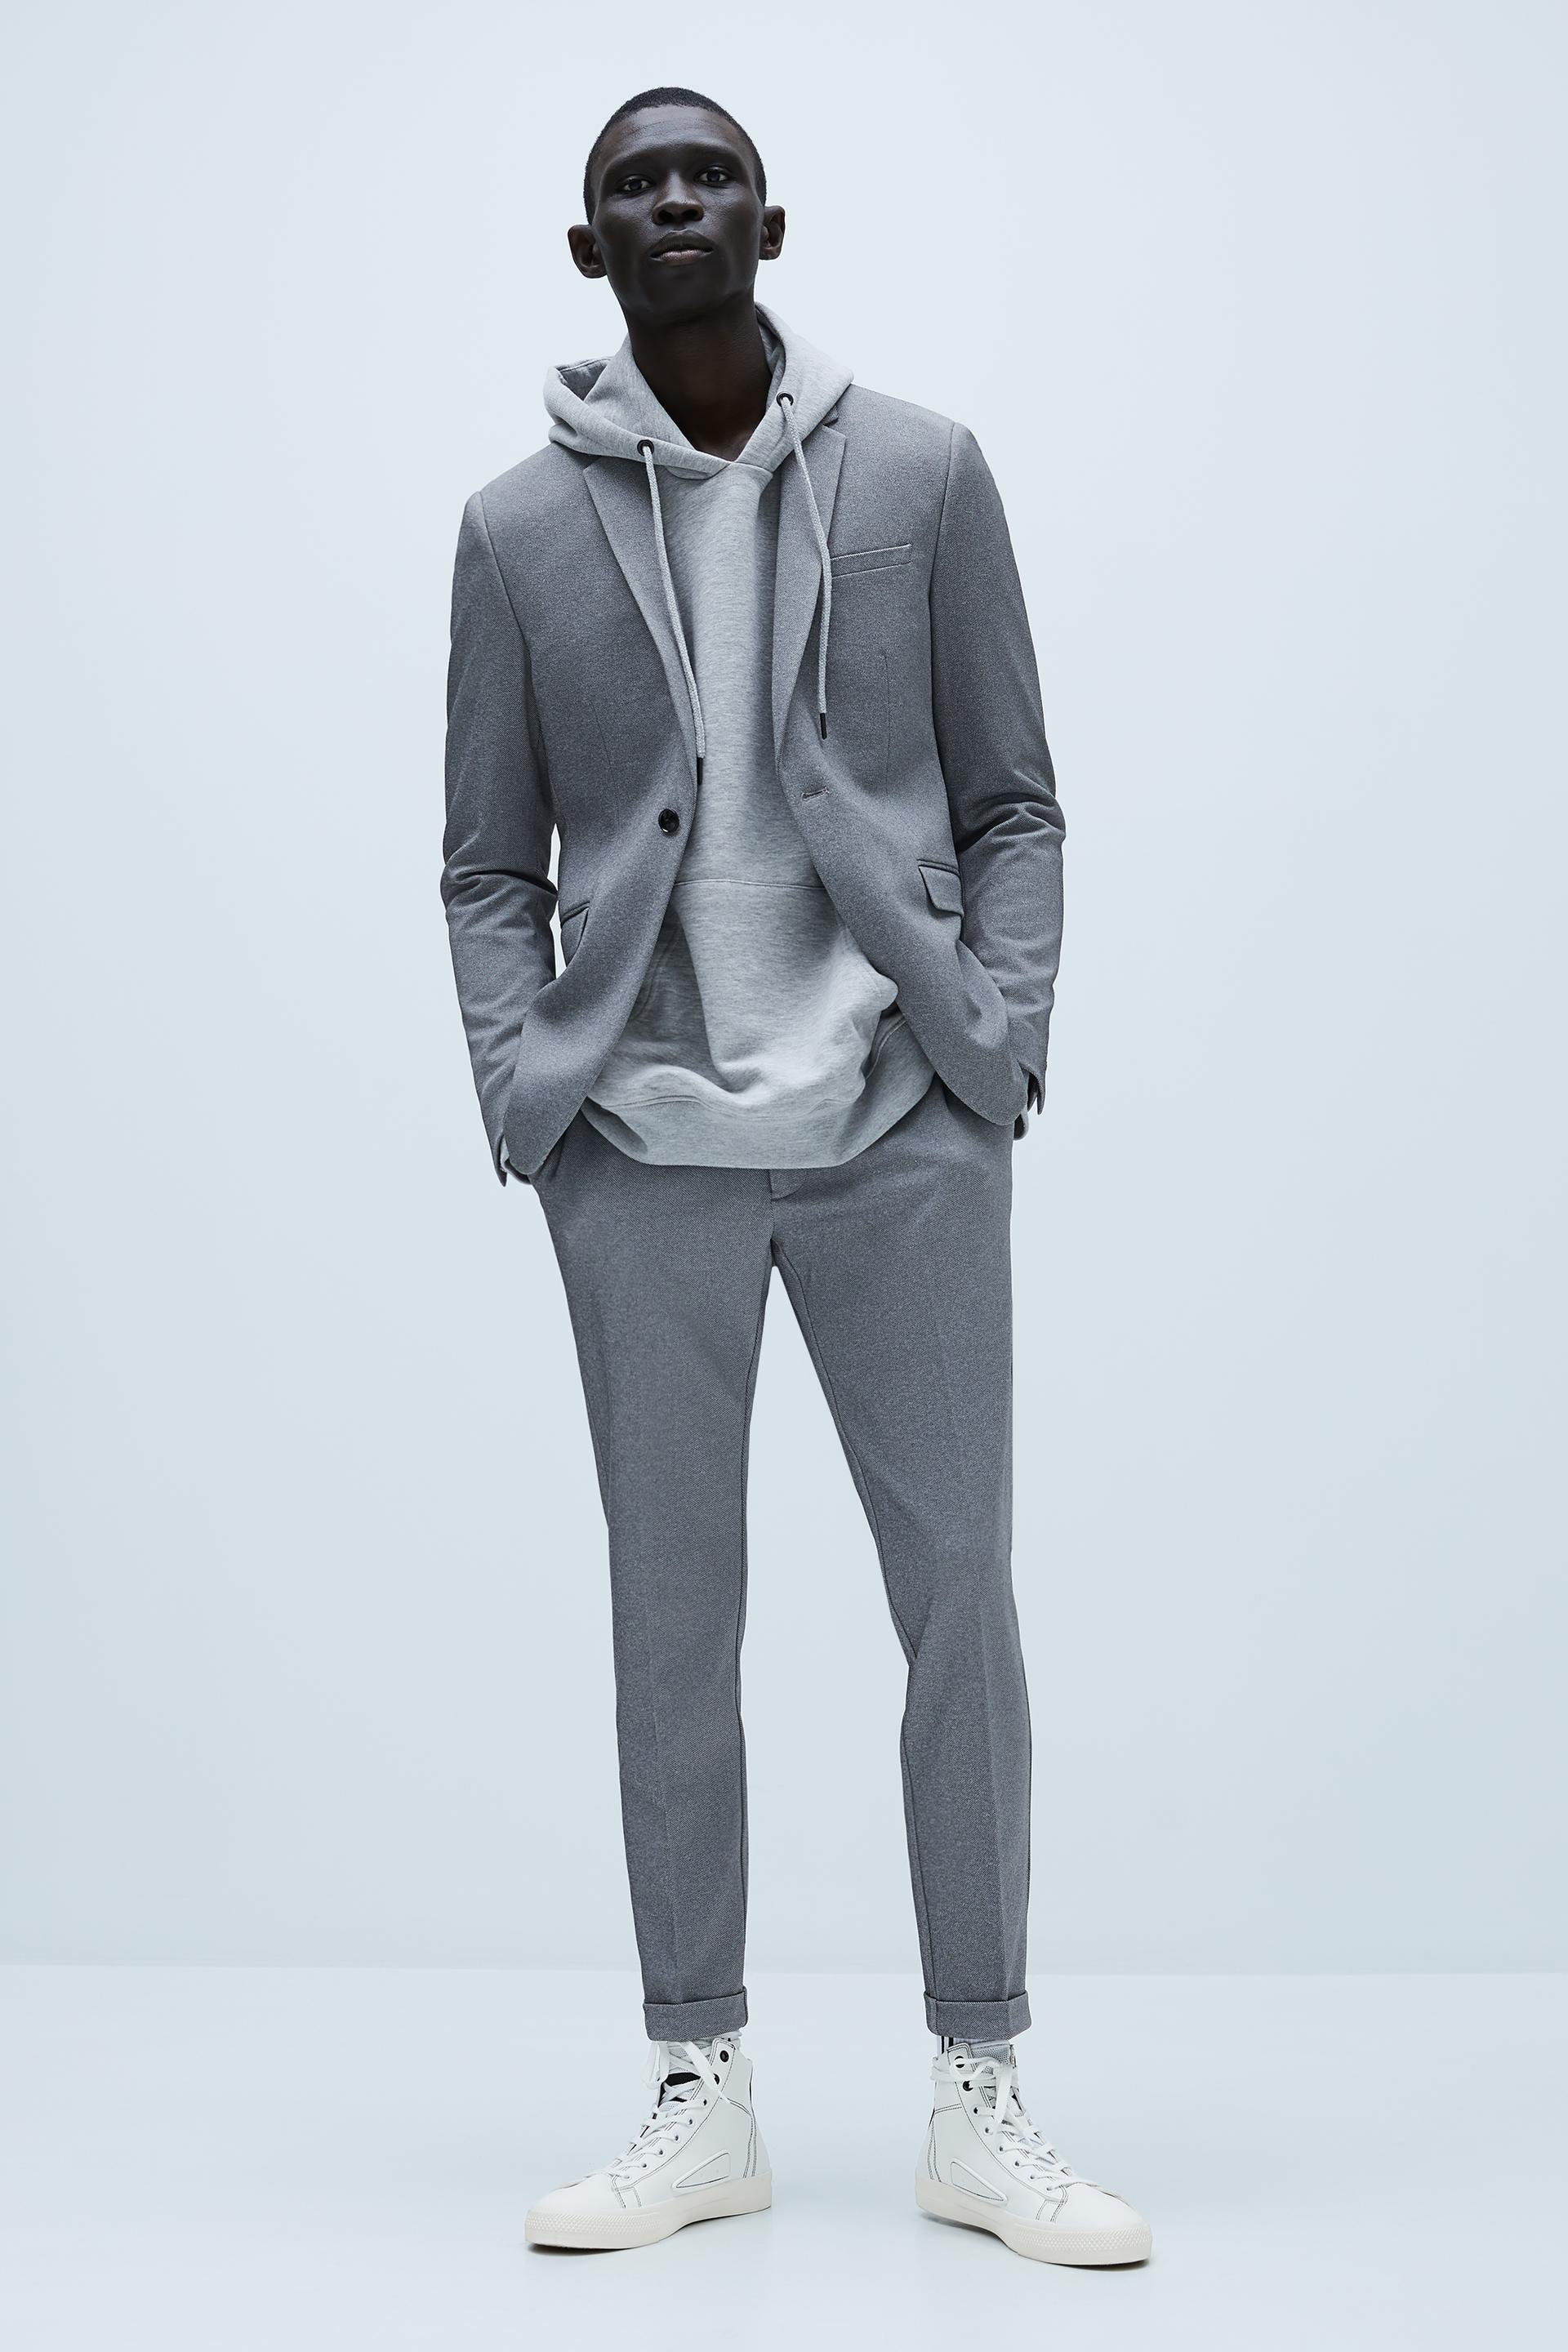 Антрацитово-серый трикотажные костюмные брюки комфортной посадки с рельефным узором Zara